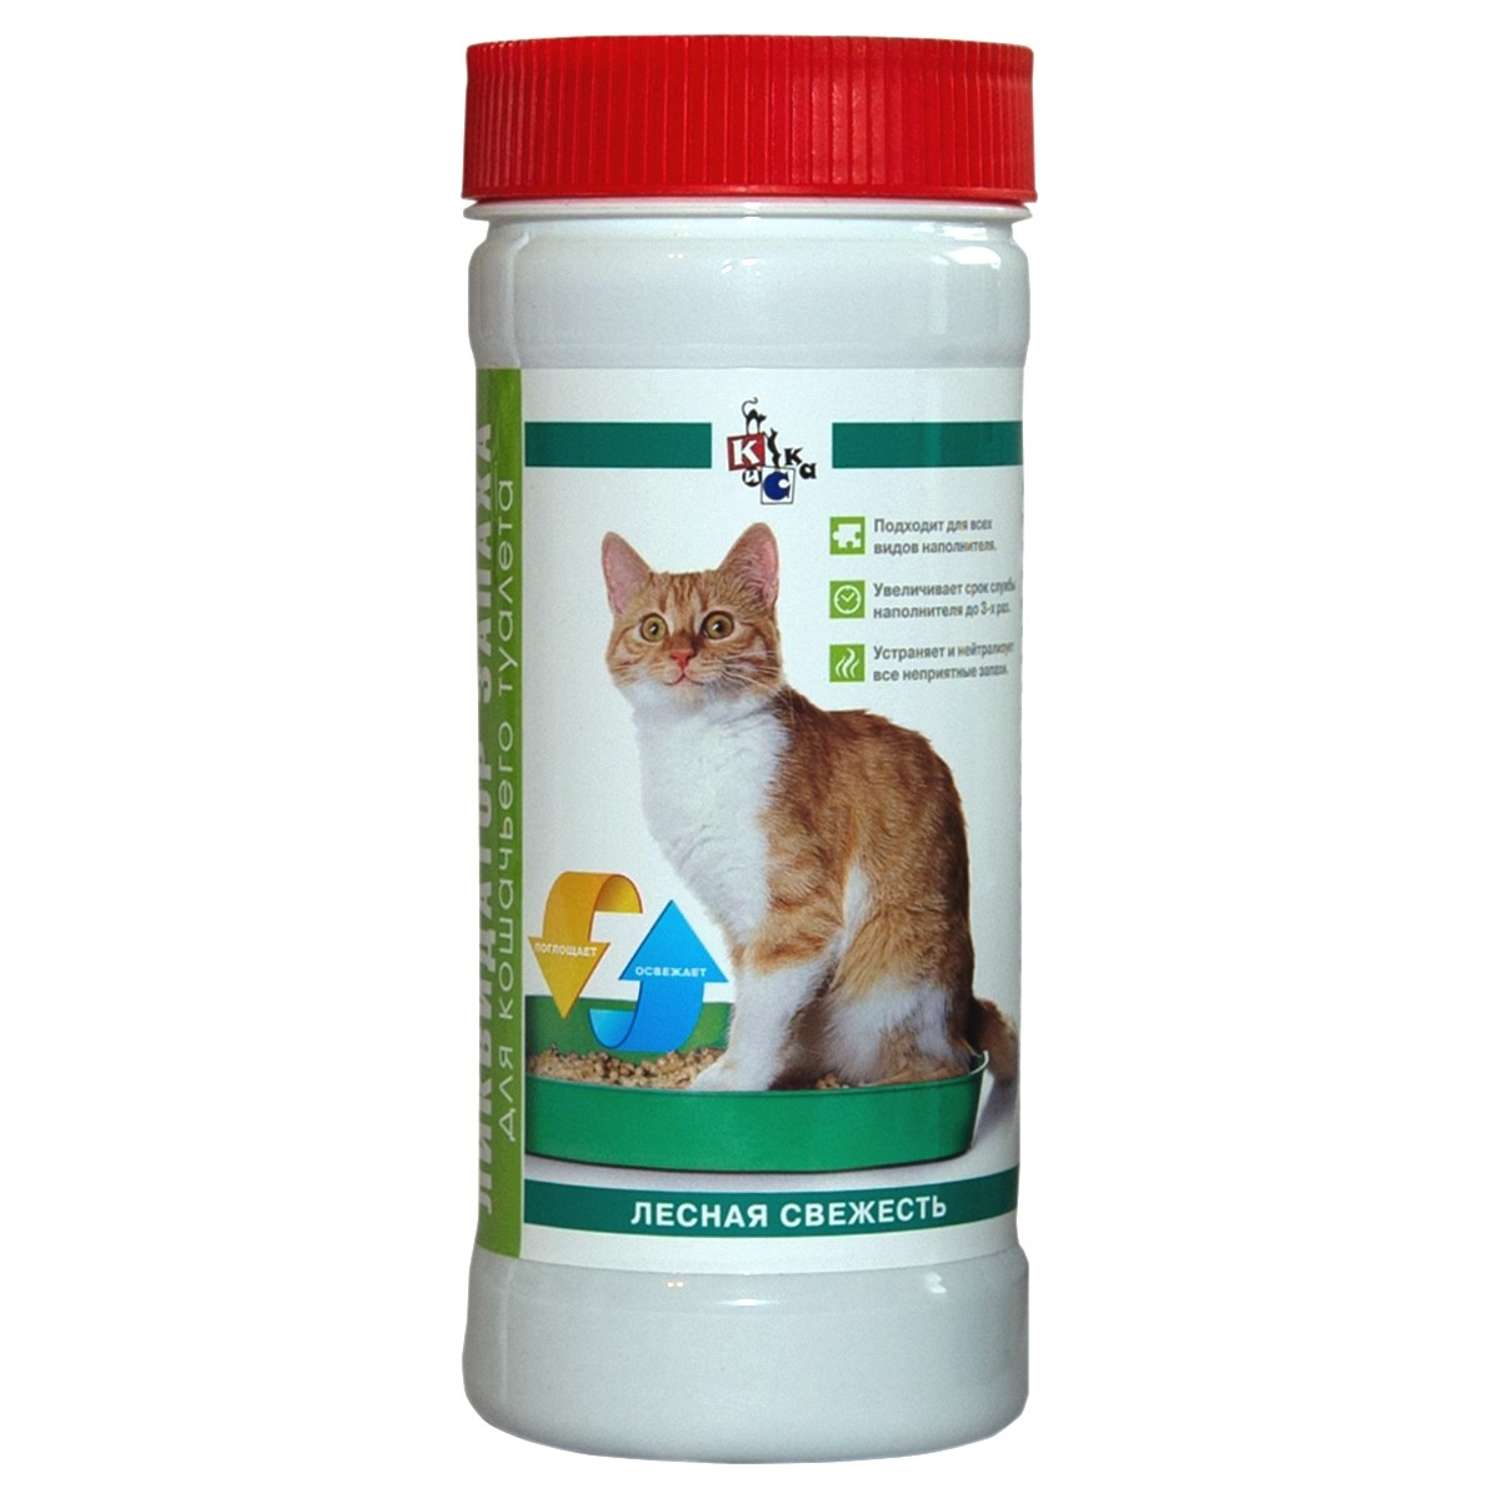 Ликвидатор запаха КиСка для кошачьего туалета Лесная свежесть 400 г - фото 1